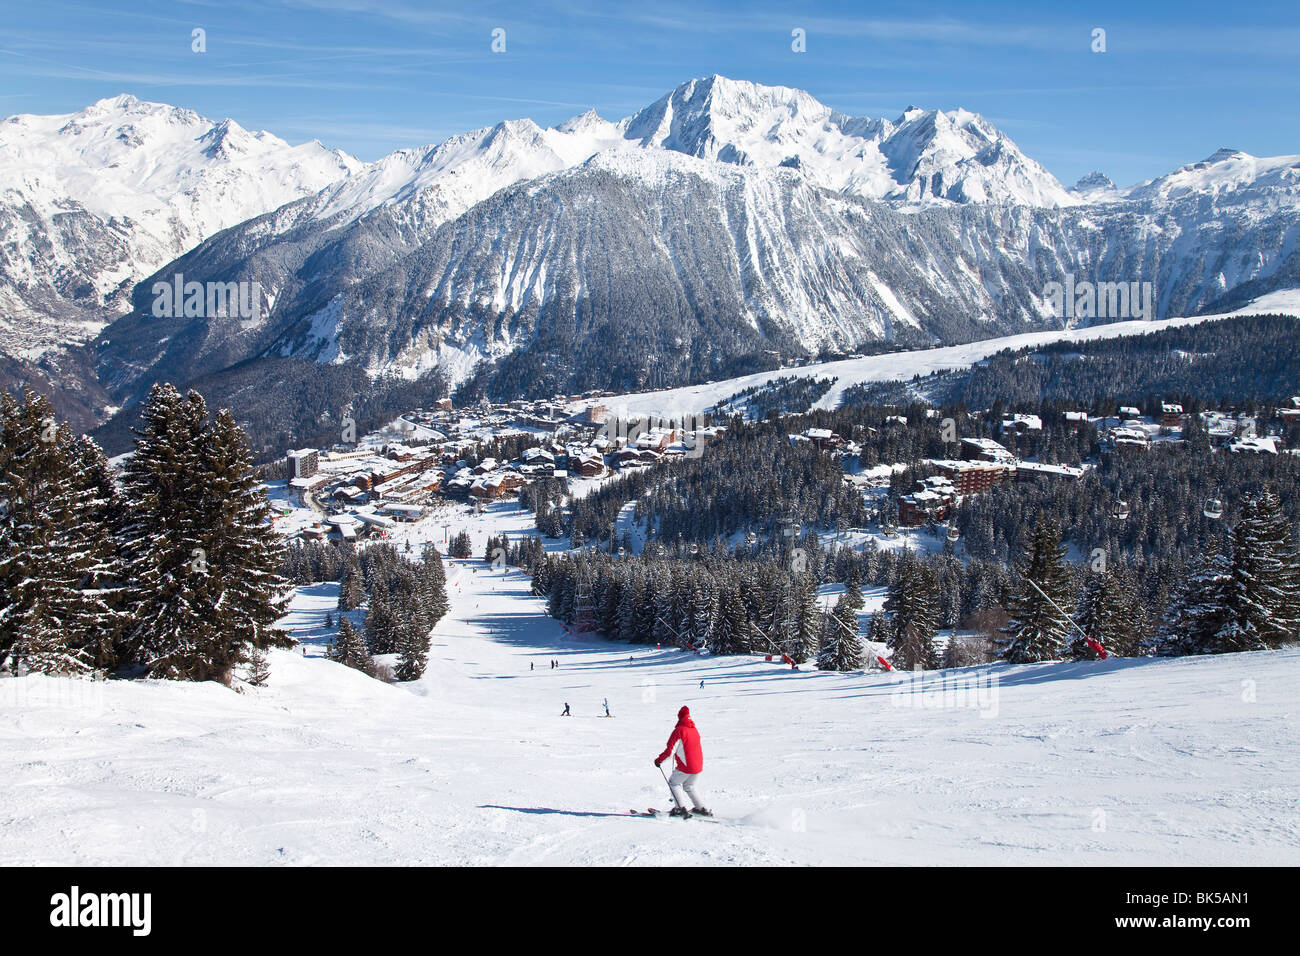 Courchevel 1850 station de ski dans les Trois Vallées (Les Trois Vallées), Savoie, Alpes, France, Europe Banque D'Images